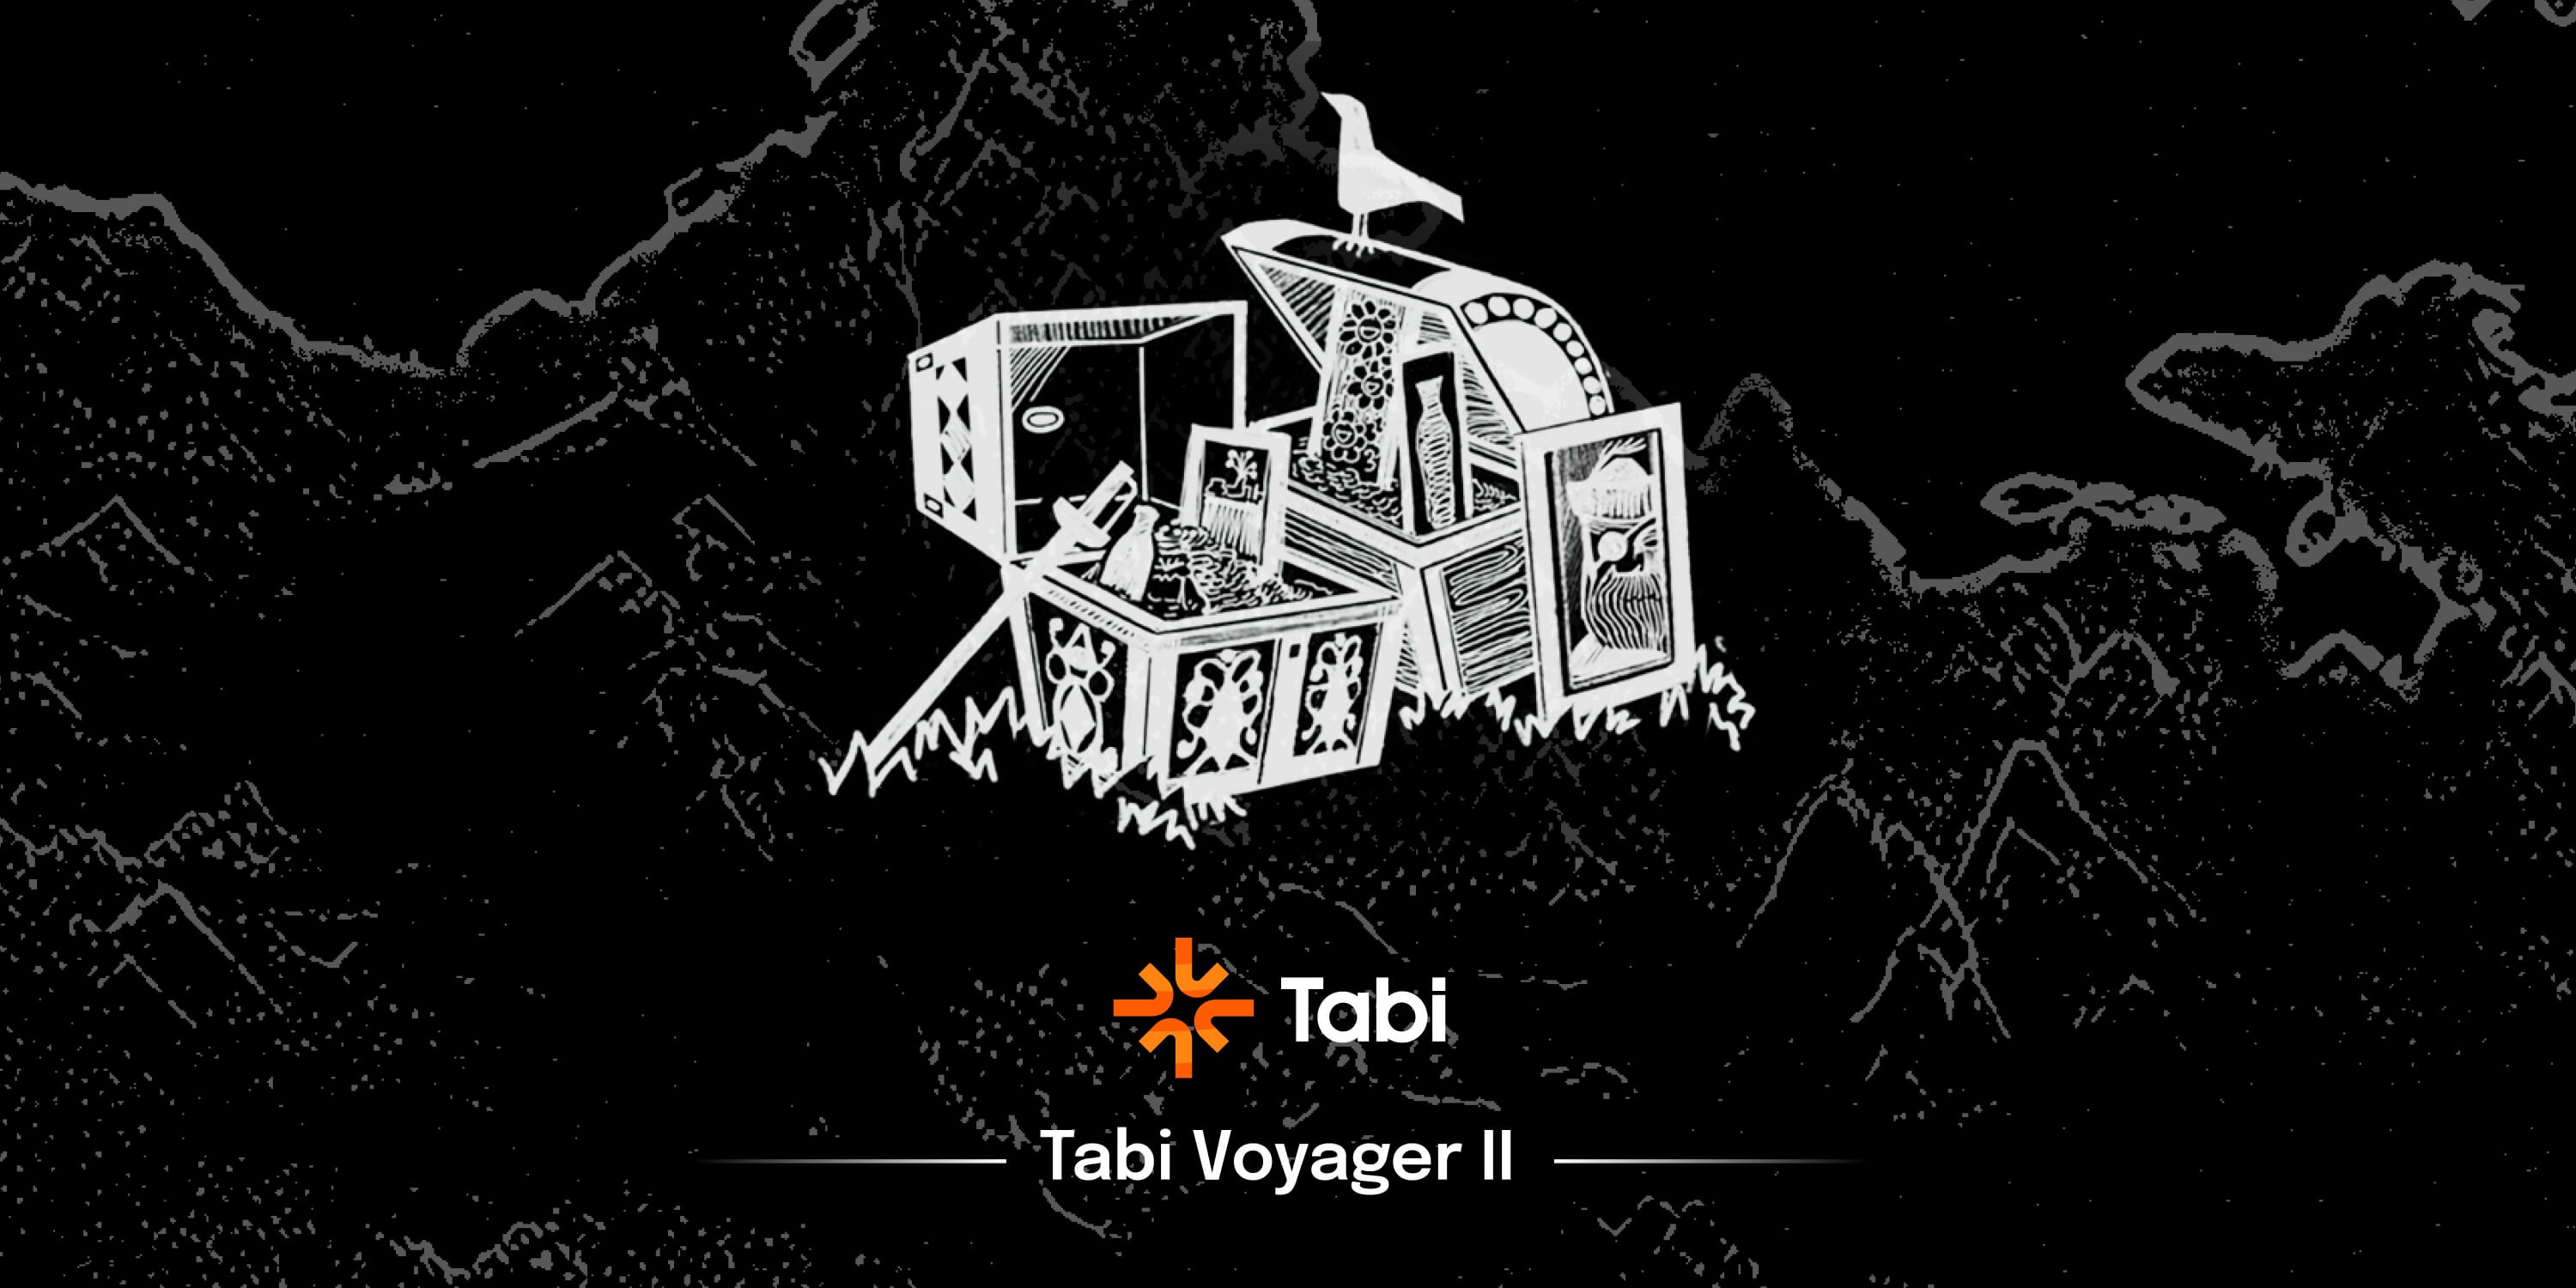 Tabi测试网新的挑战（Voyage II ）已开启，船长和水手们速速登船前往海盗岛收获属于自己战利品吧！